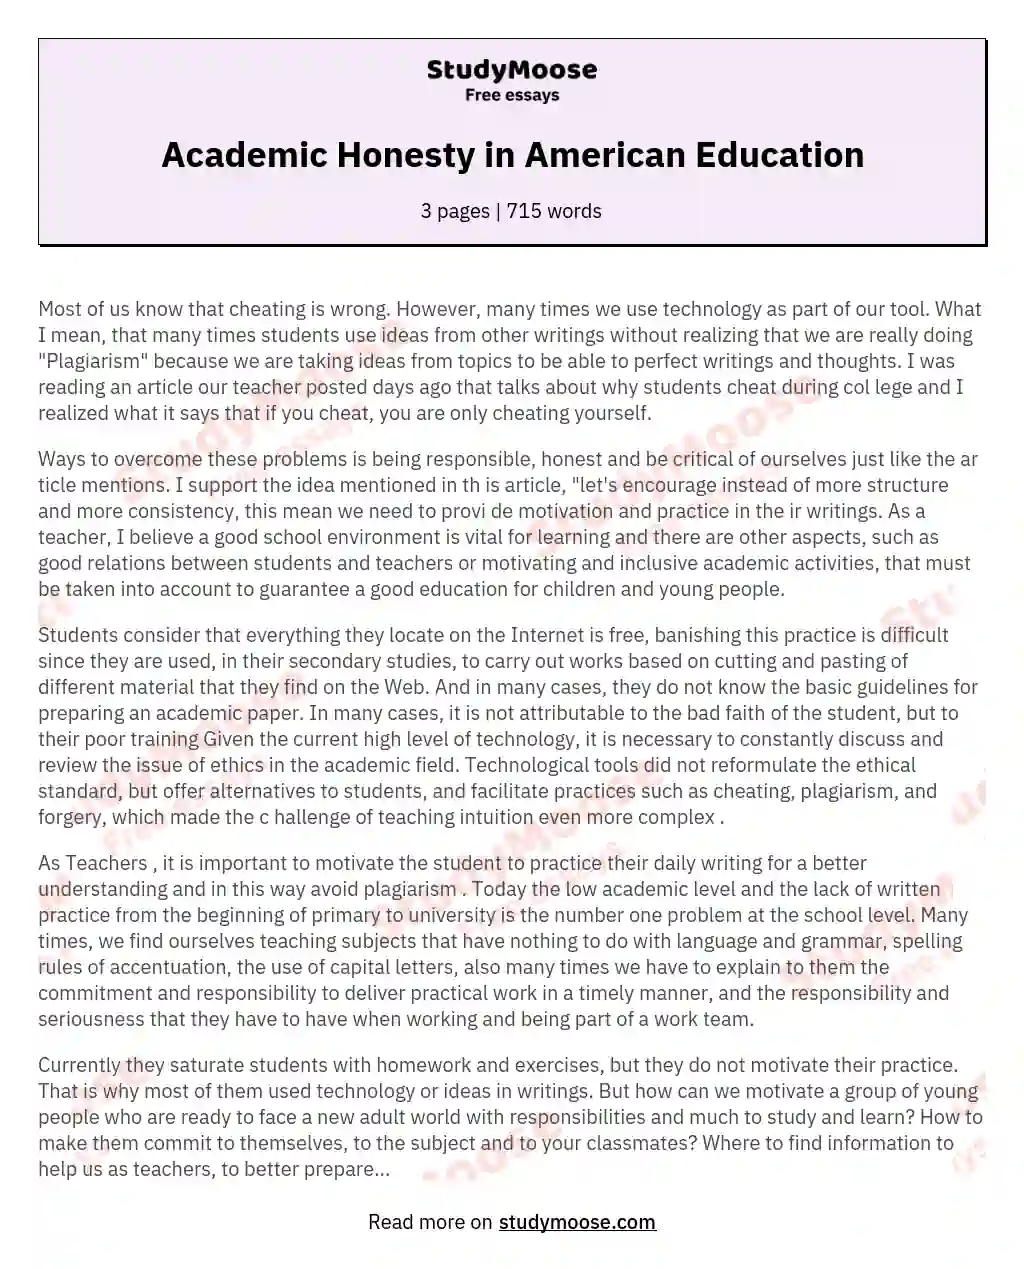 Academic Honesty in American Education